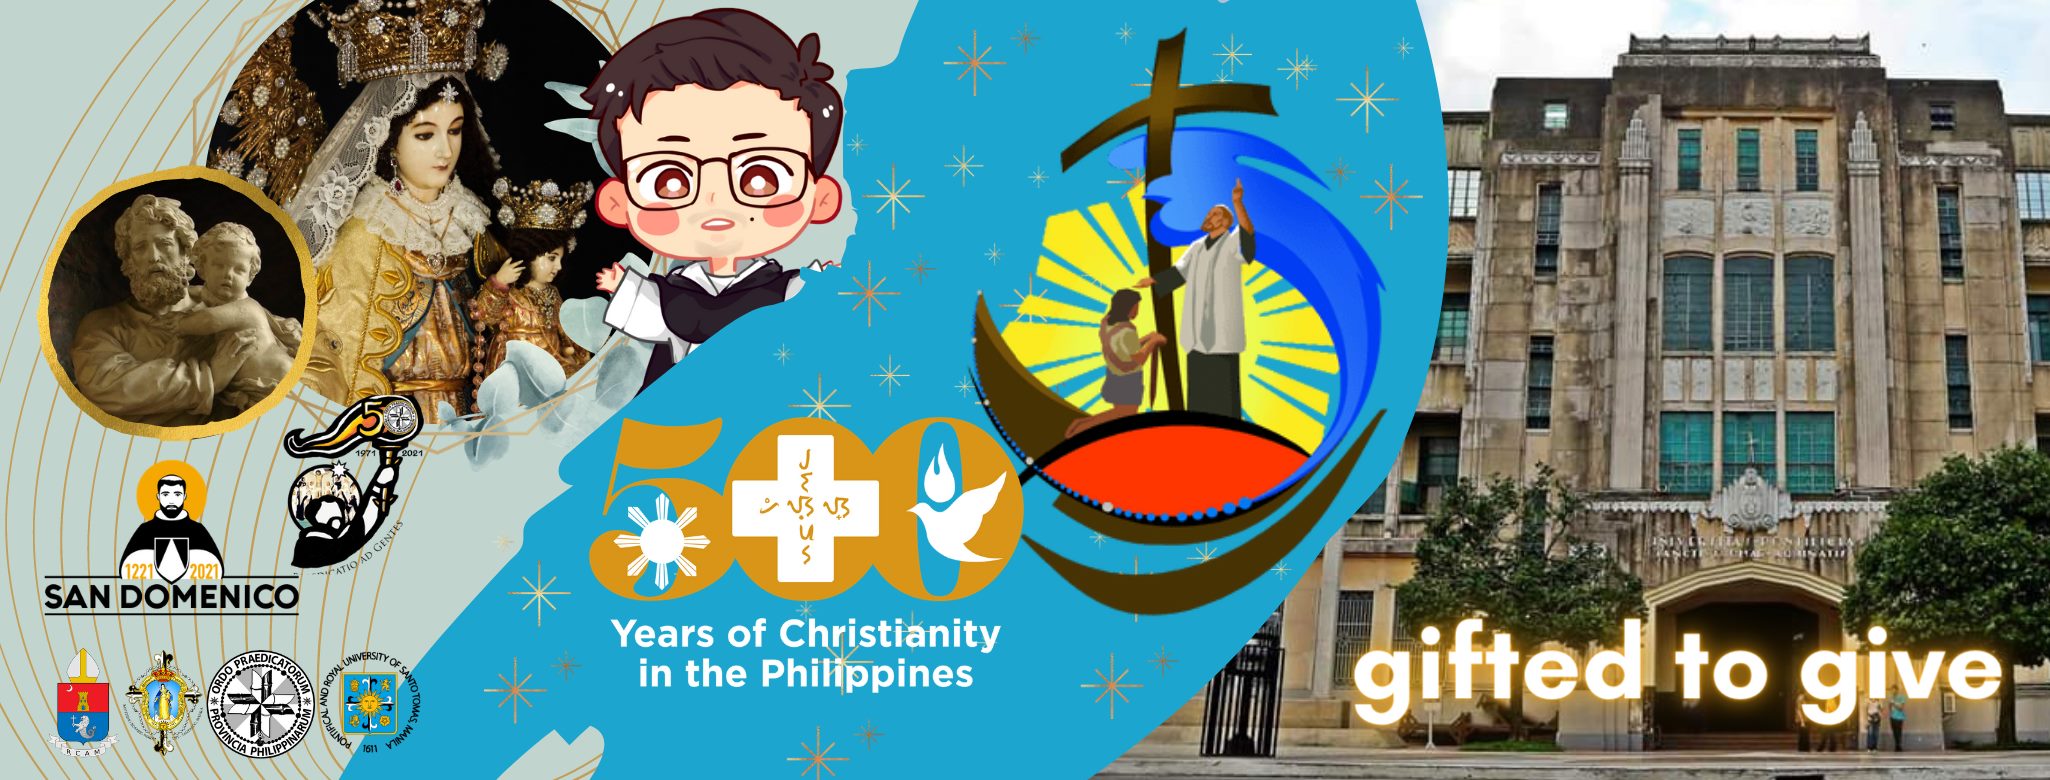 Mass Schedules | Santisimo Rosario Parish - UST, City of Manila